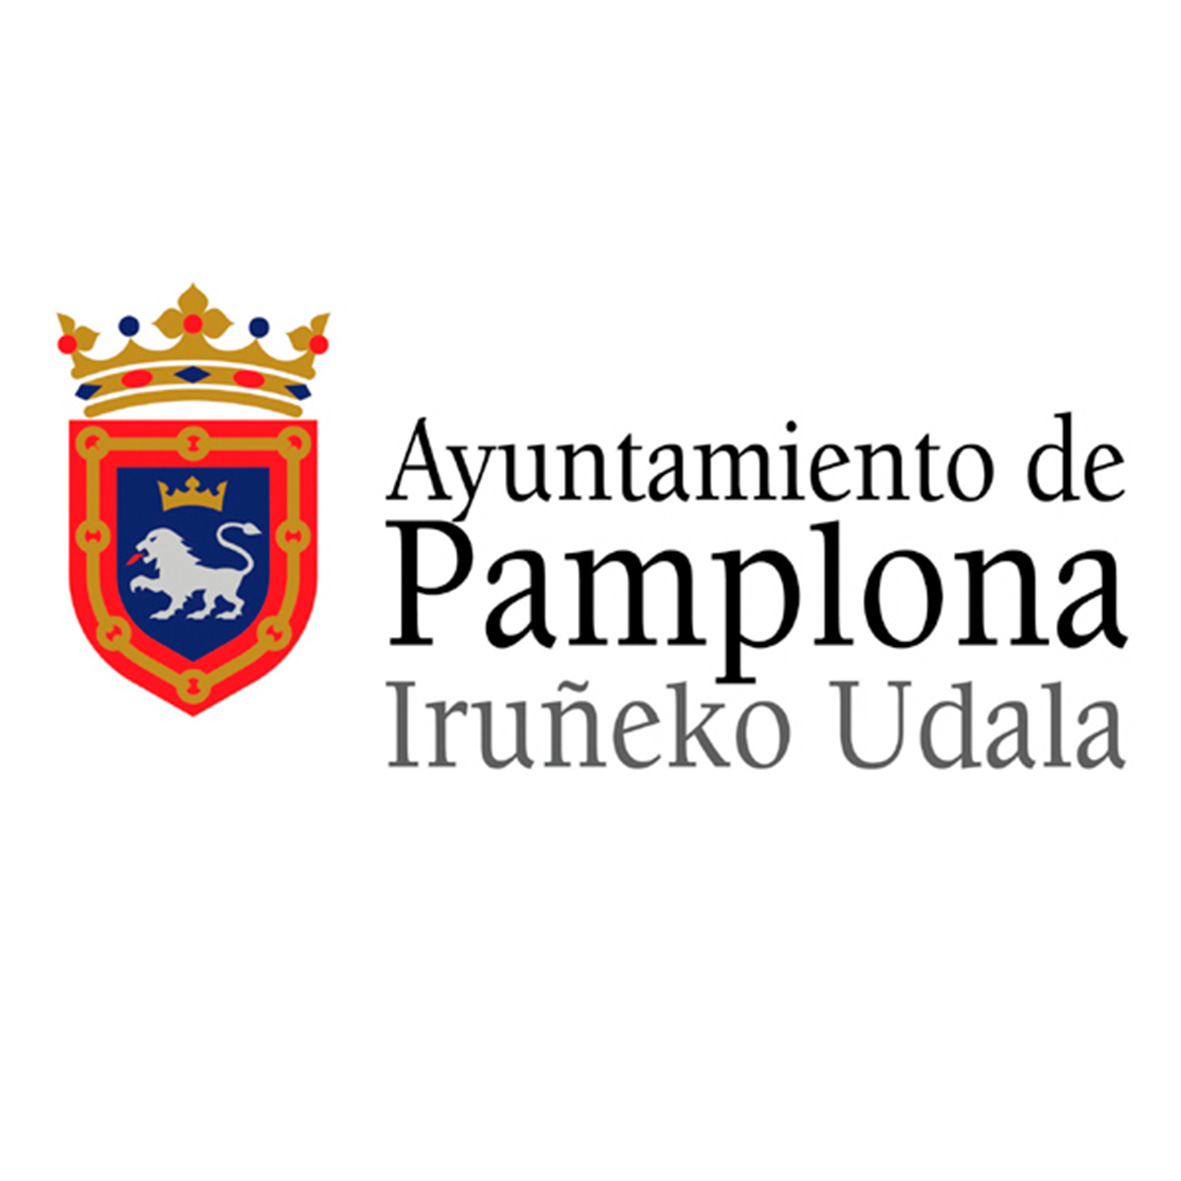 Colaboran: Ayuntamiento de Pamplona - Semanas de la Ciencia Navarra